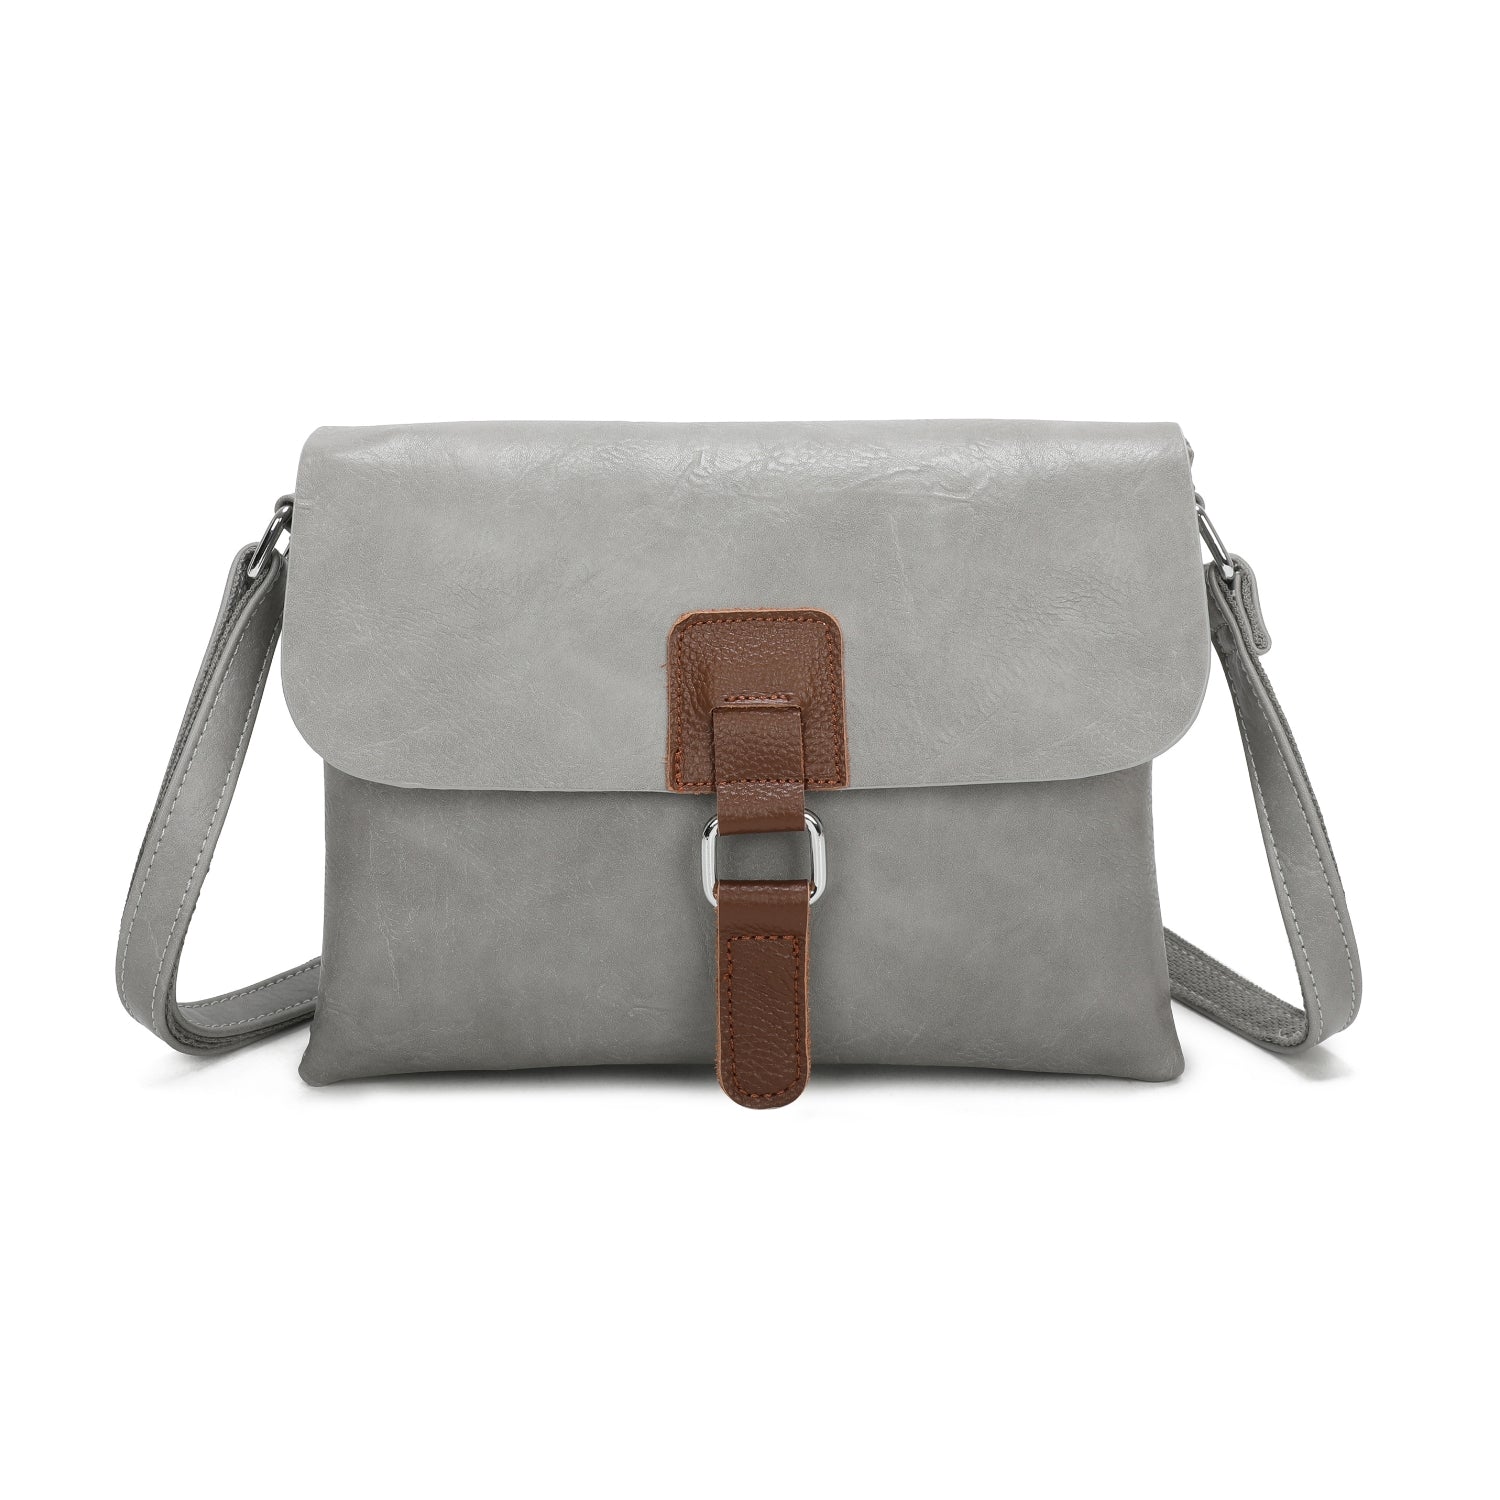 Satchel/Crossbody Bag